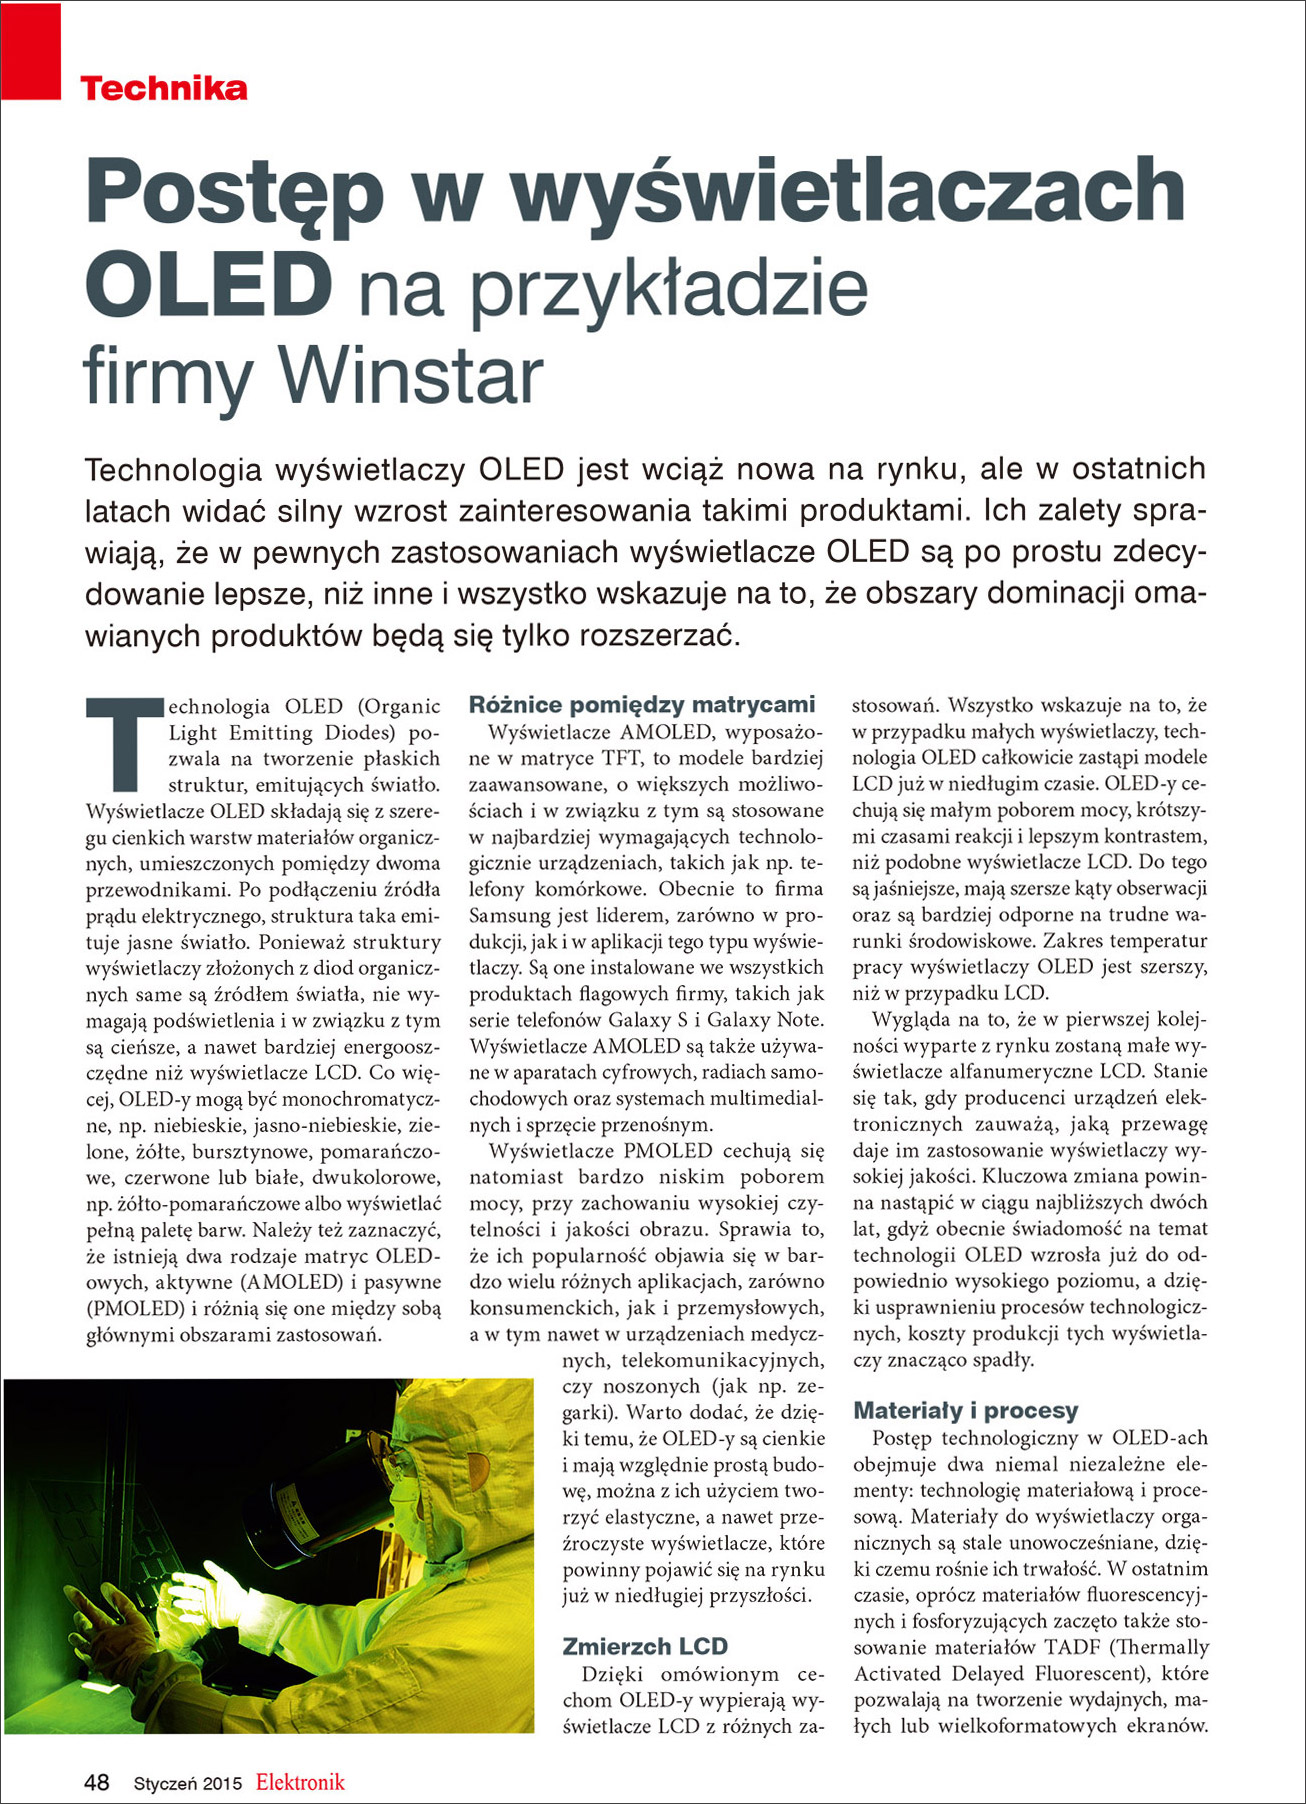 Elektronik Magazine - Publication Article (Winstar OLED) Page1